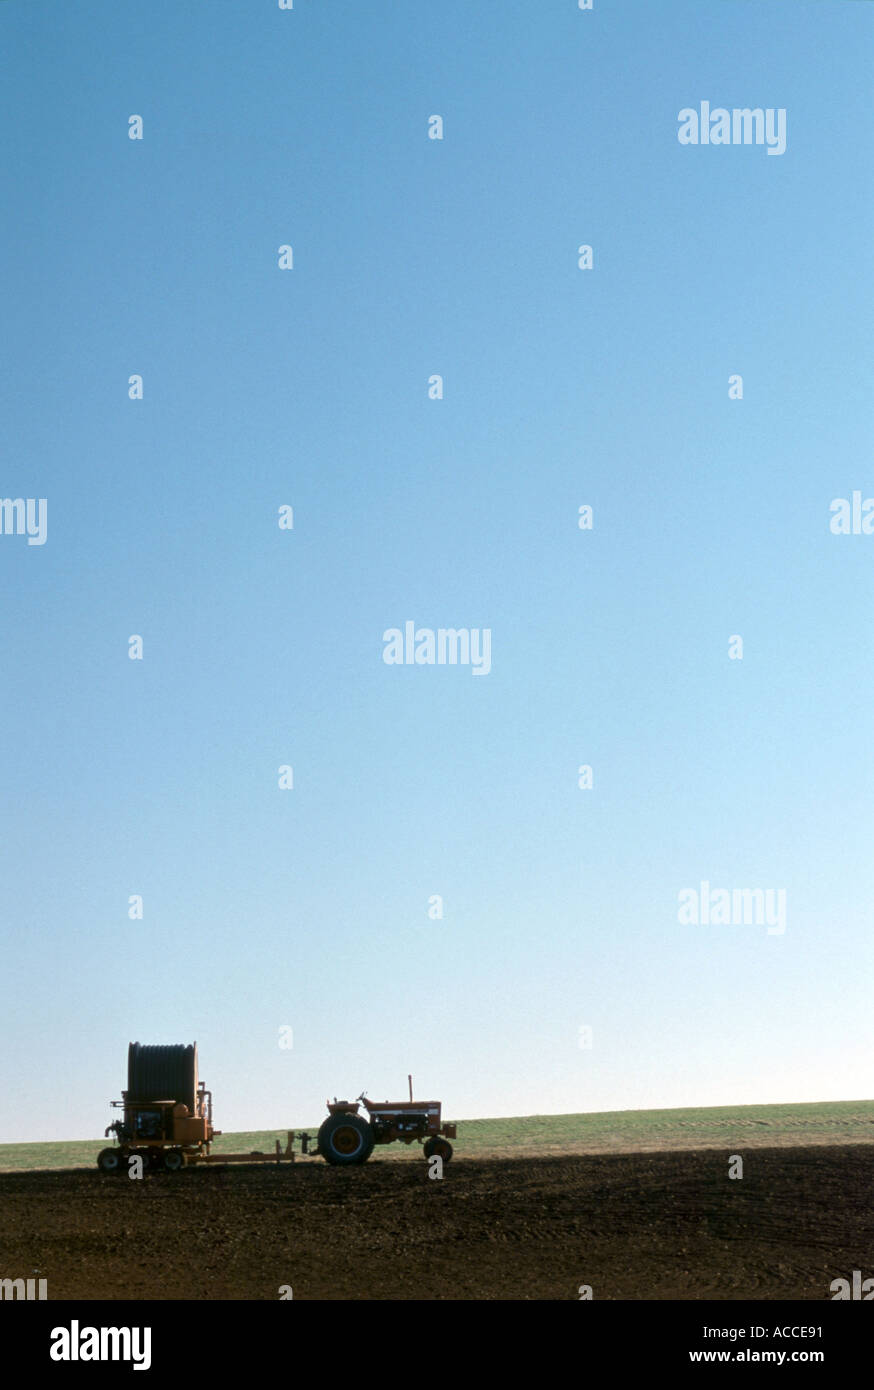 Silhouette der Traktor Abschleppen Beregnungs-und Bewässerungstechnik gegen blauen Himmel ähnliches Bild ACCE92 Stockfoto